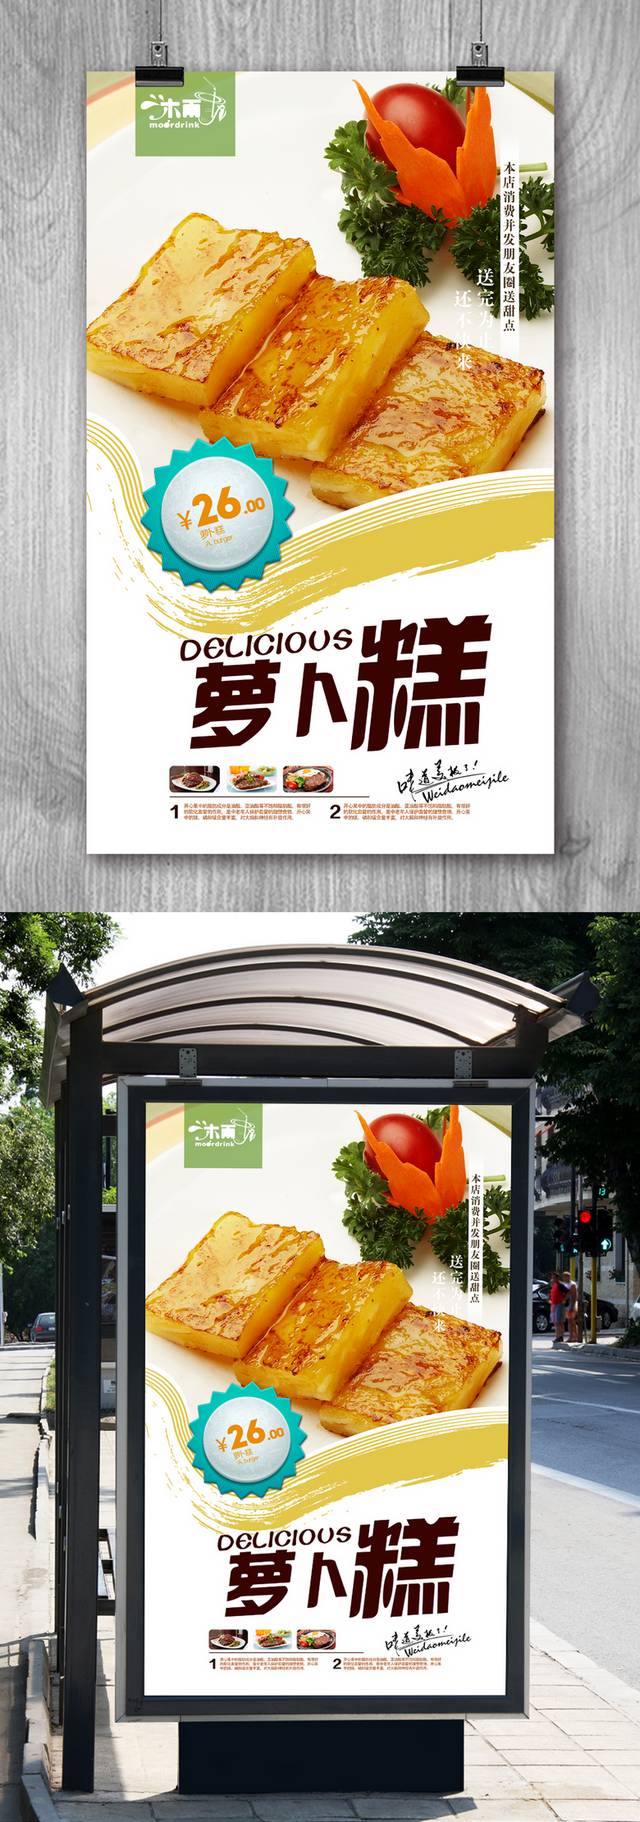 高档萝卜糕零食宣传海报设计